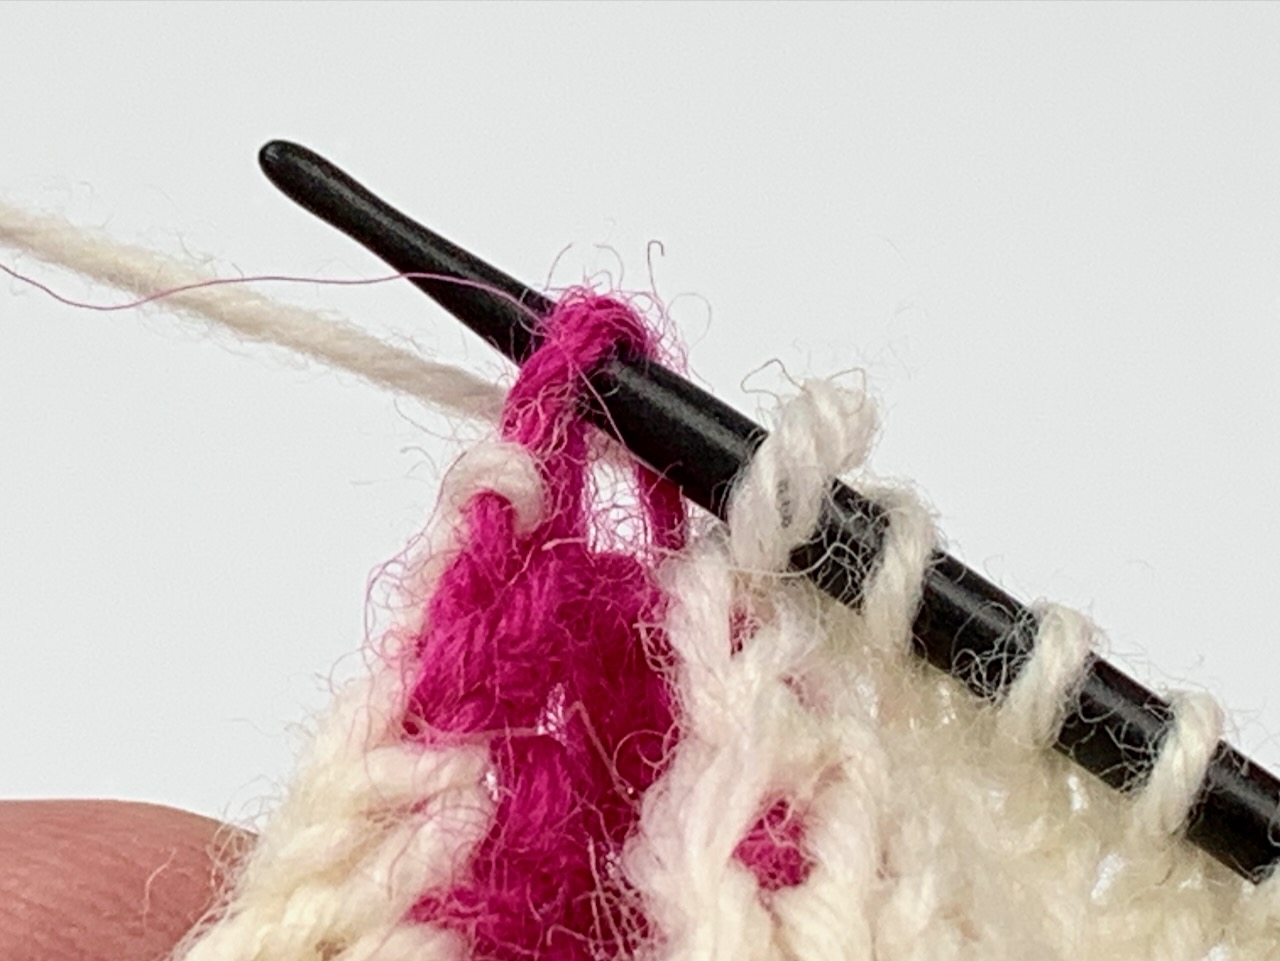 Socken stricken mit zwei Nadeln: Auf der Vorderseite werden die Knötchen der Rückseite mit den Randmaschen zusammengestrickt.